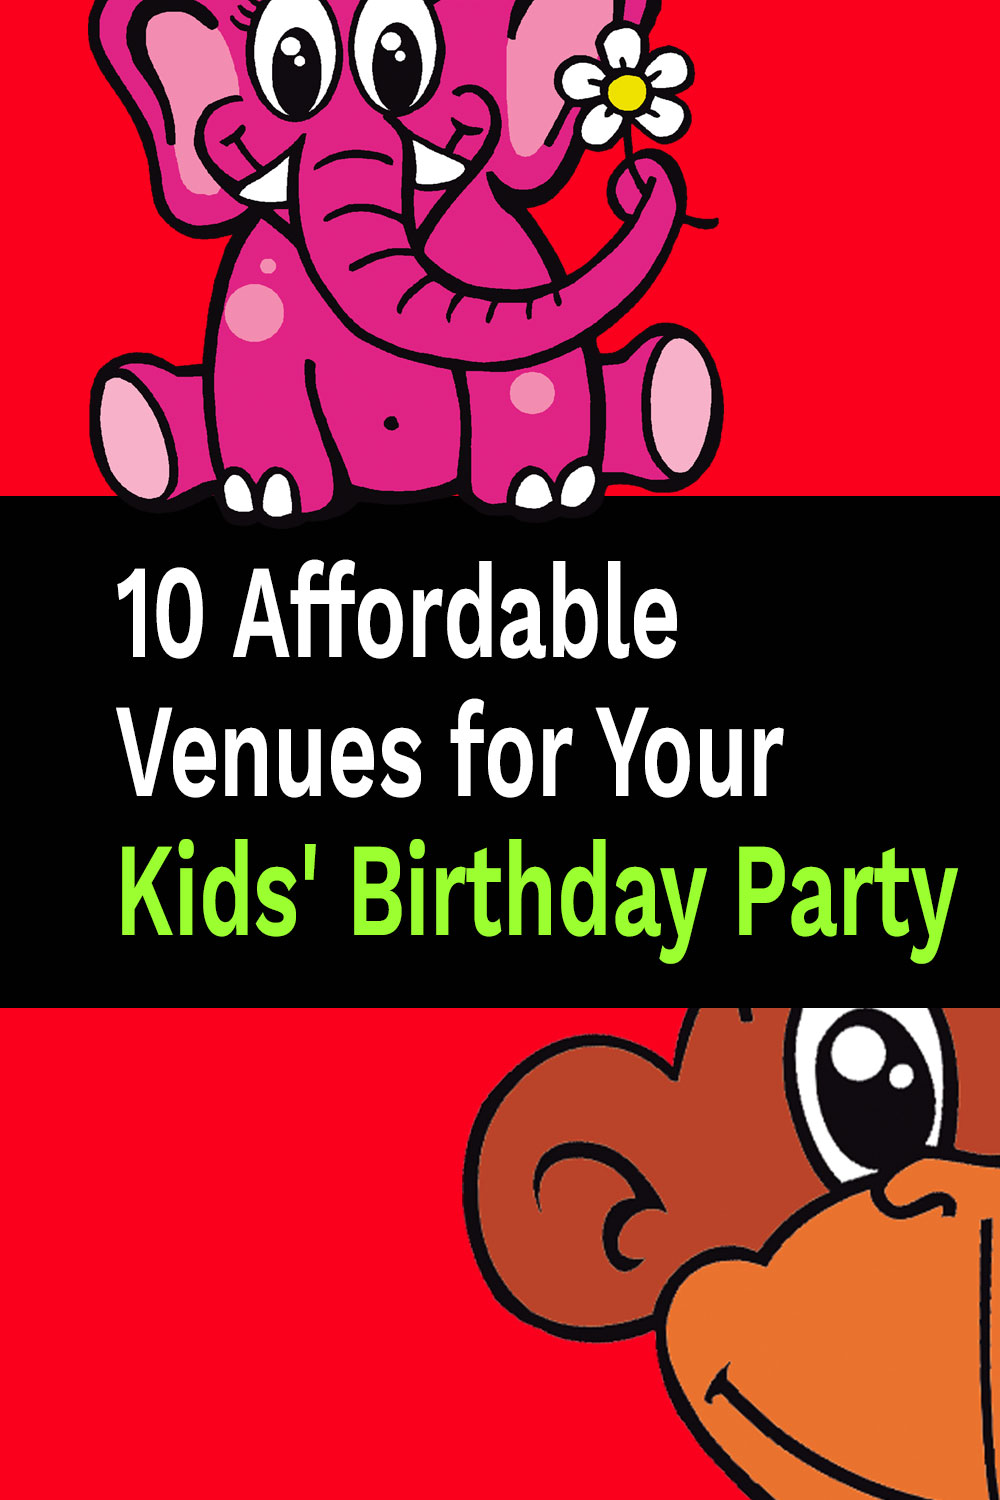 10 lugares asequibles para la fiesta de cumpleaños de sus hijos